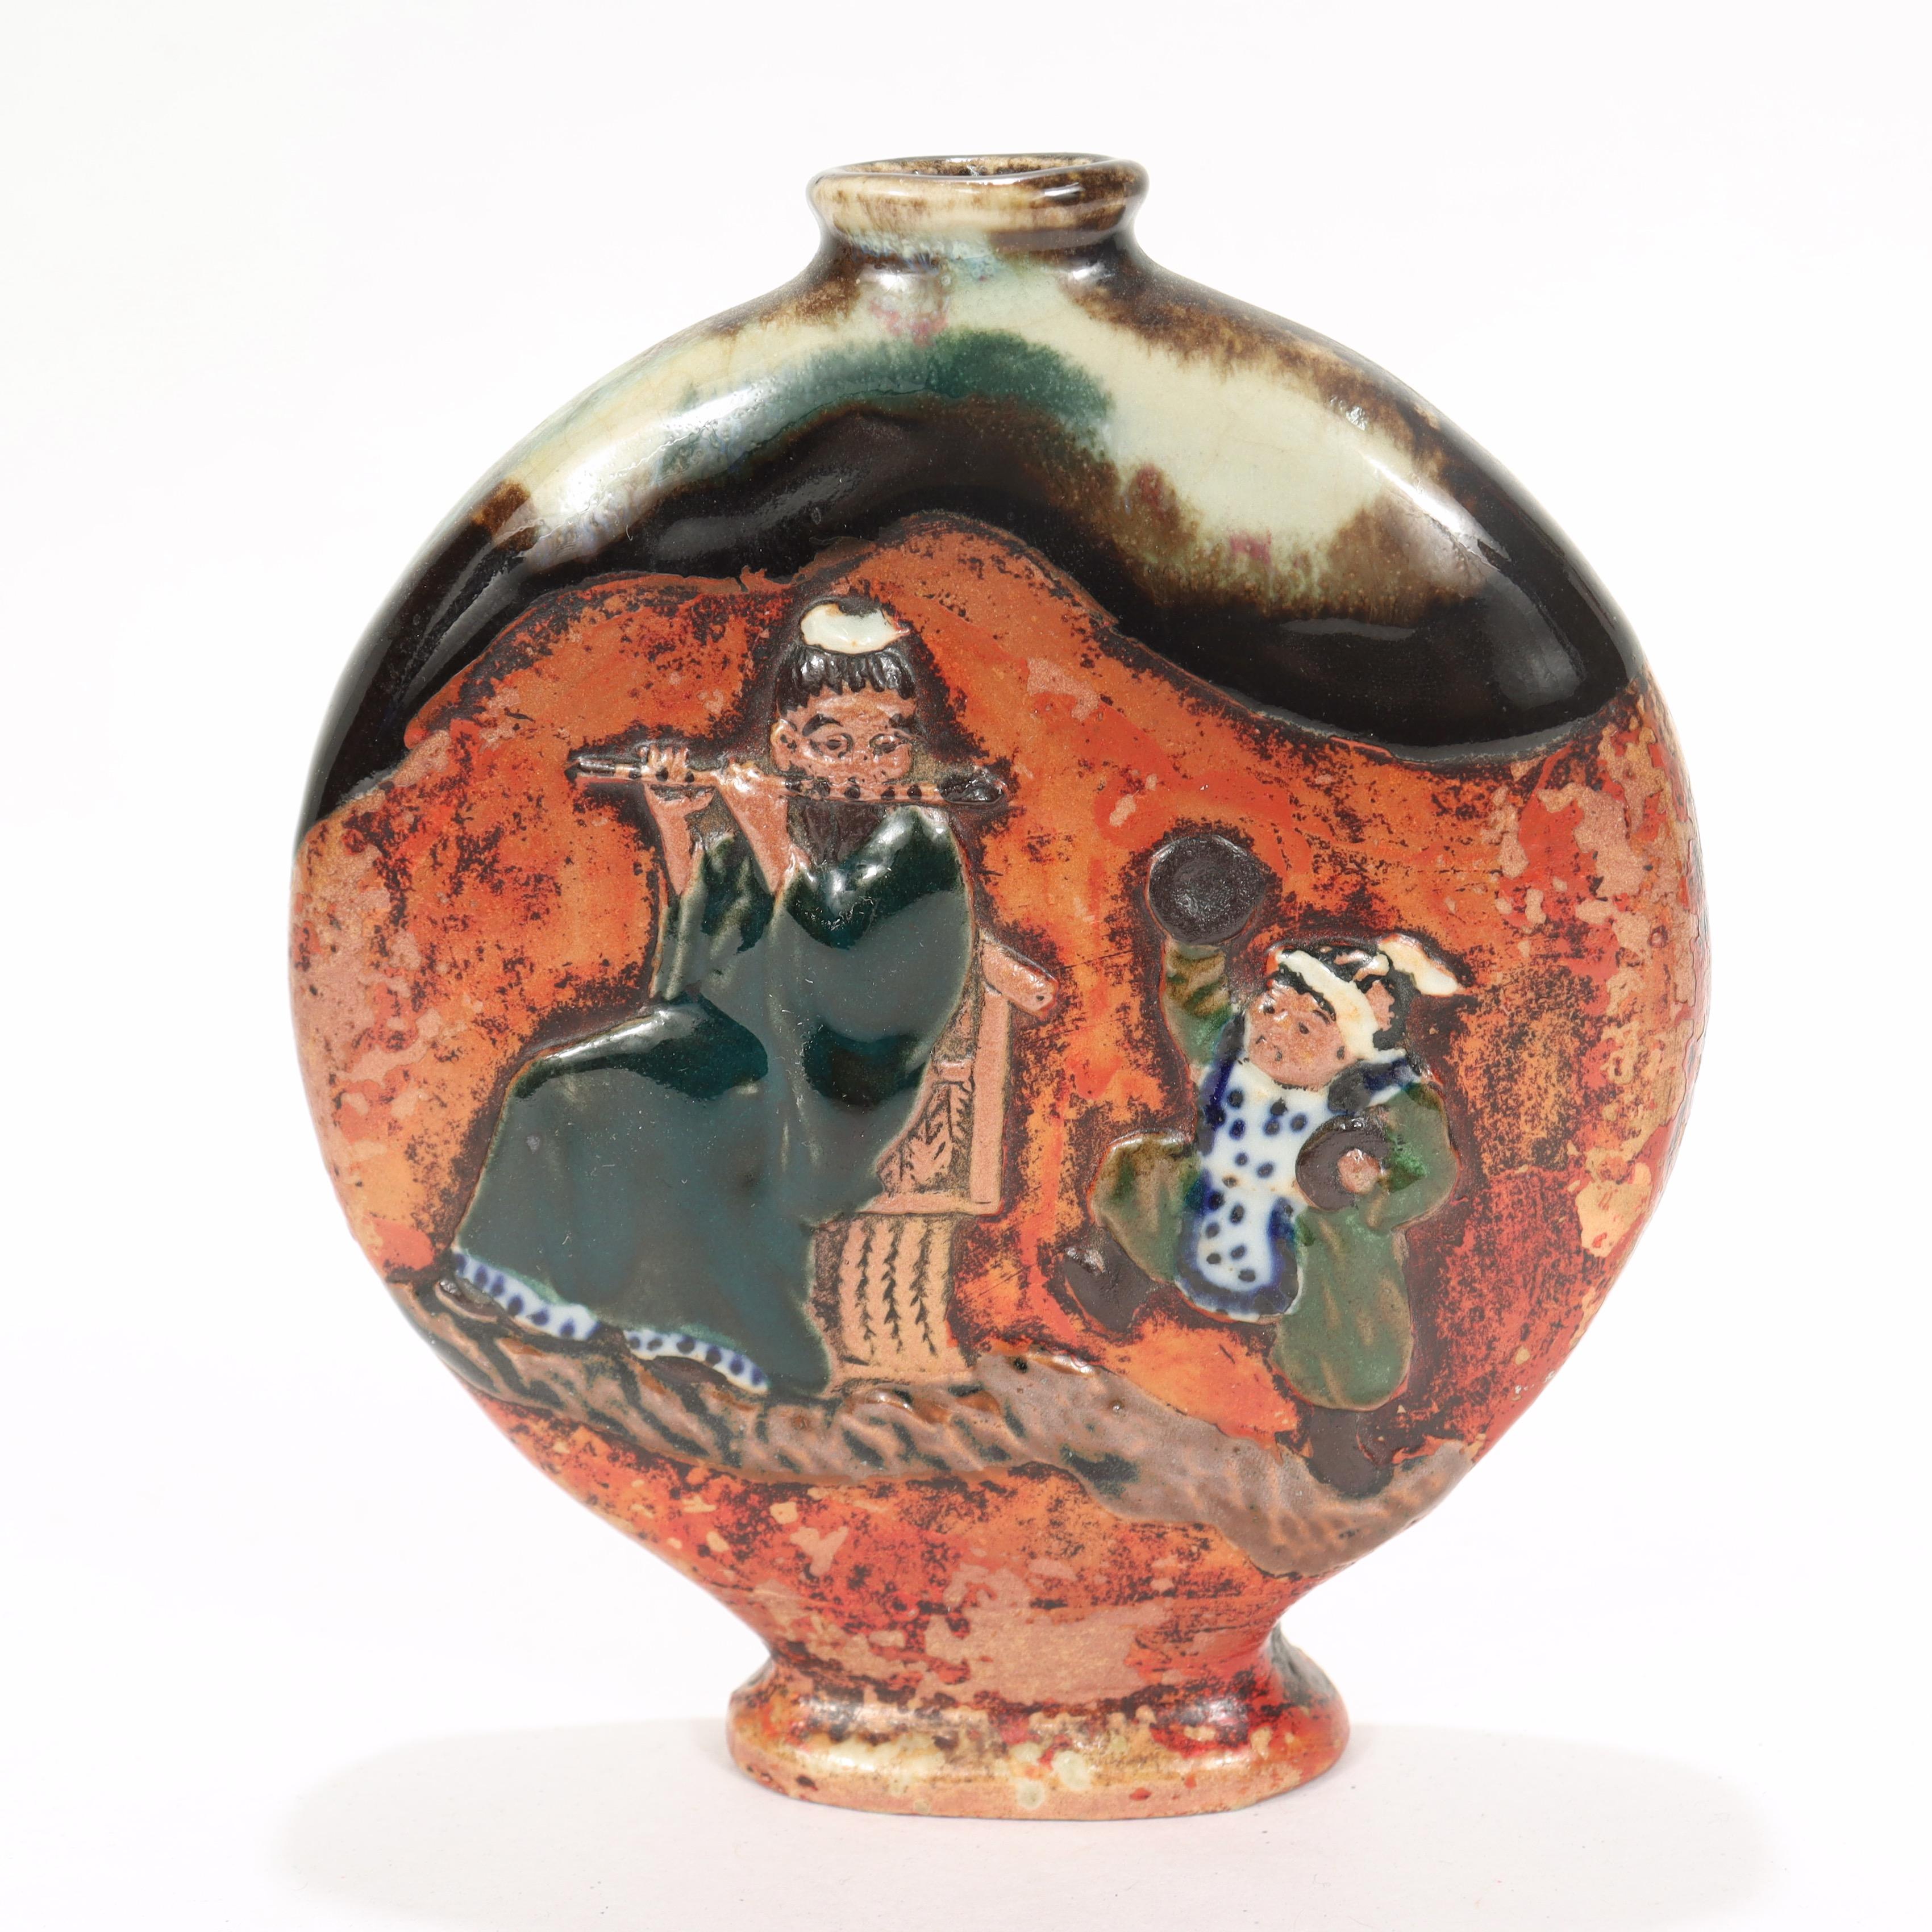 Eine feine antike japanische Sumidagawa-Keramik Mondflasche Vase.

Auf beiden Seiten verziert. 

Die eine Seite zeigt einen Mann, der eine Shinobue-Flöte spielt, und ein Kind, das mit einer Zimbel in jeder Hand tanzt, während die andere Seite ein